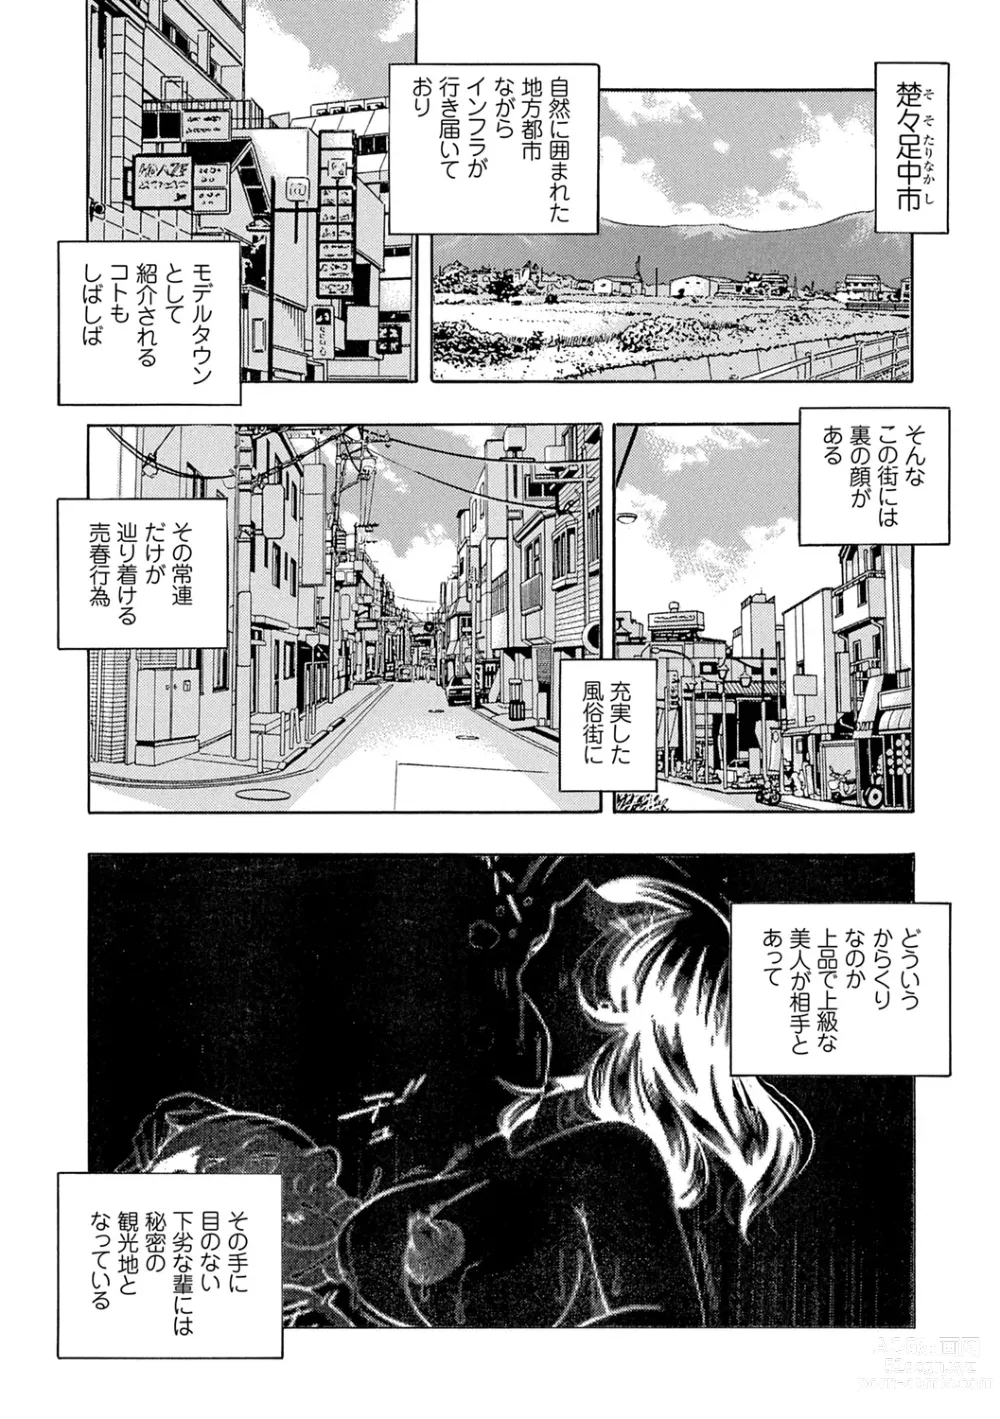 Page 6 of manga Joshidaisei Yuuka